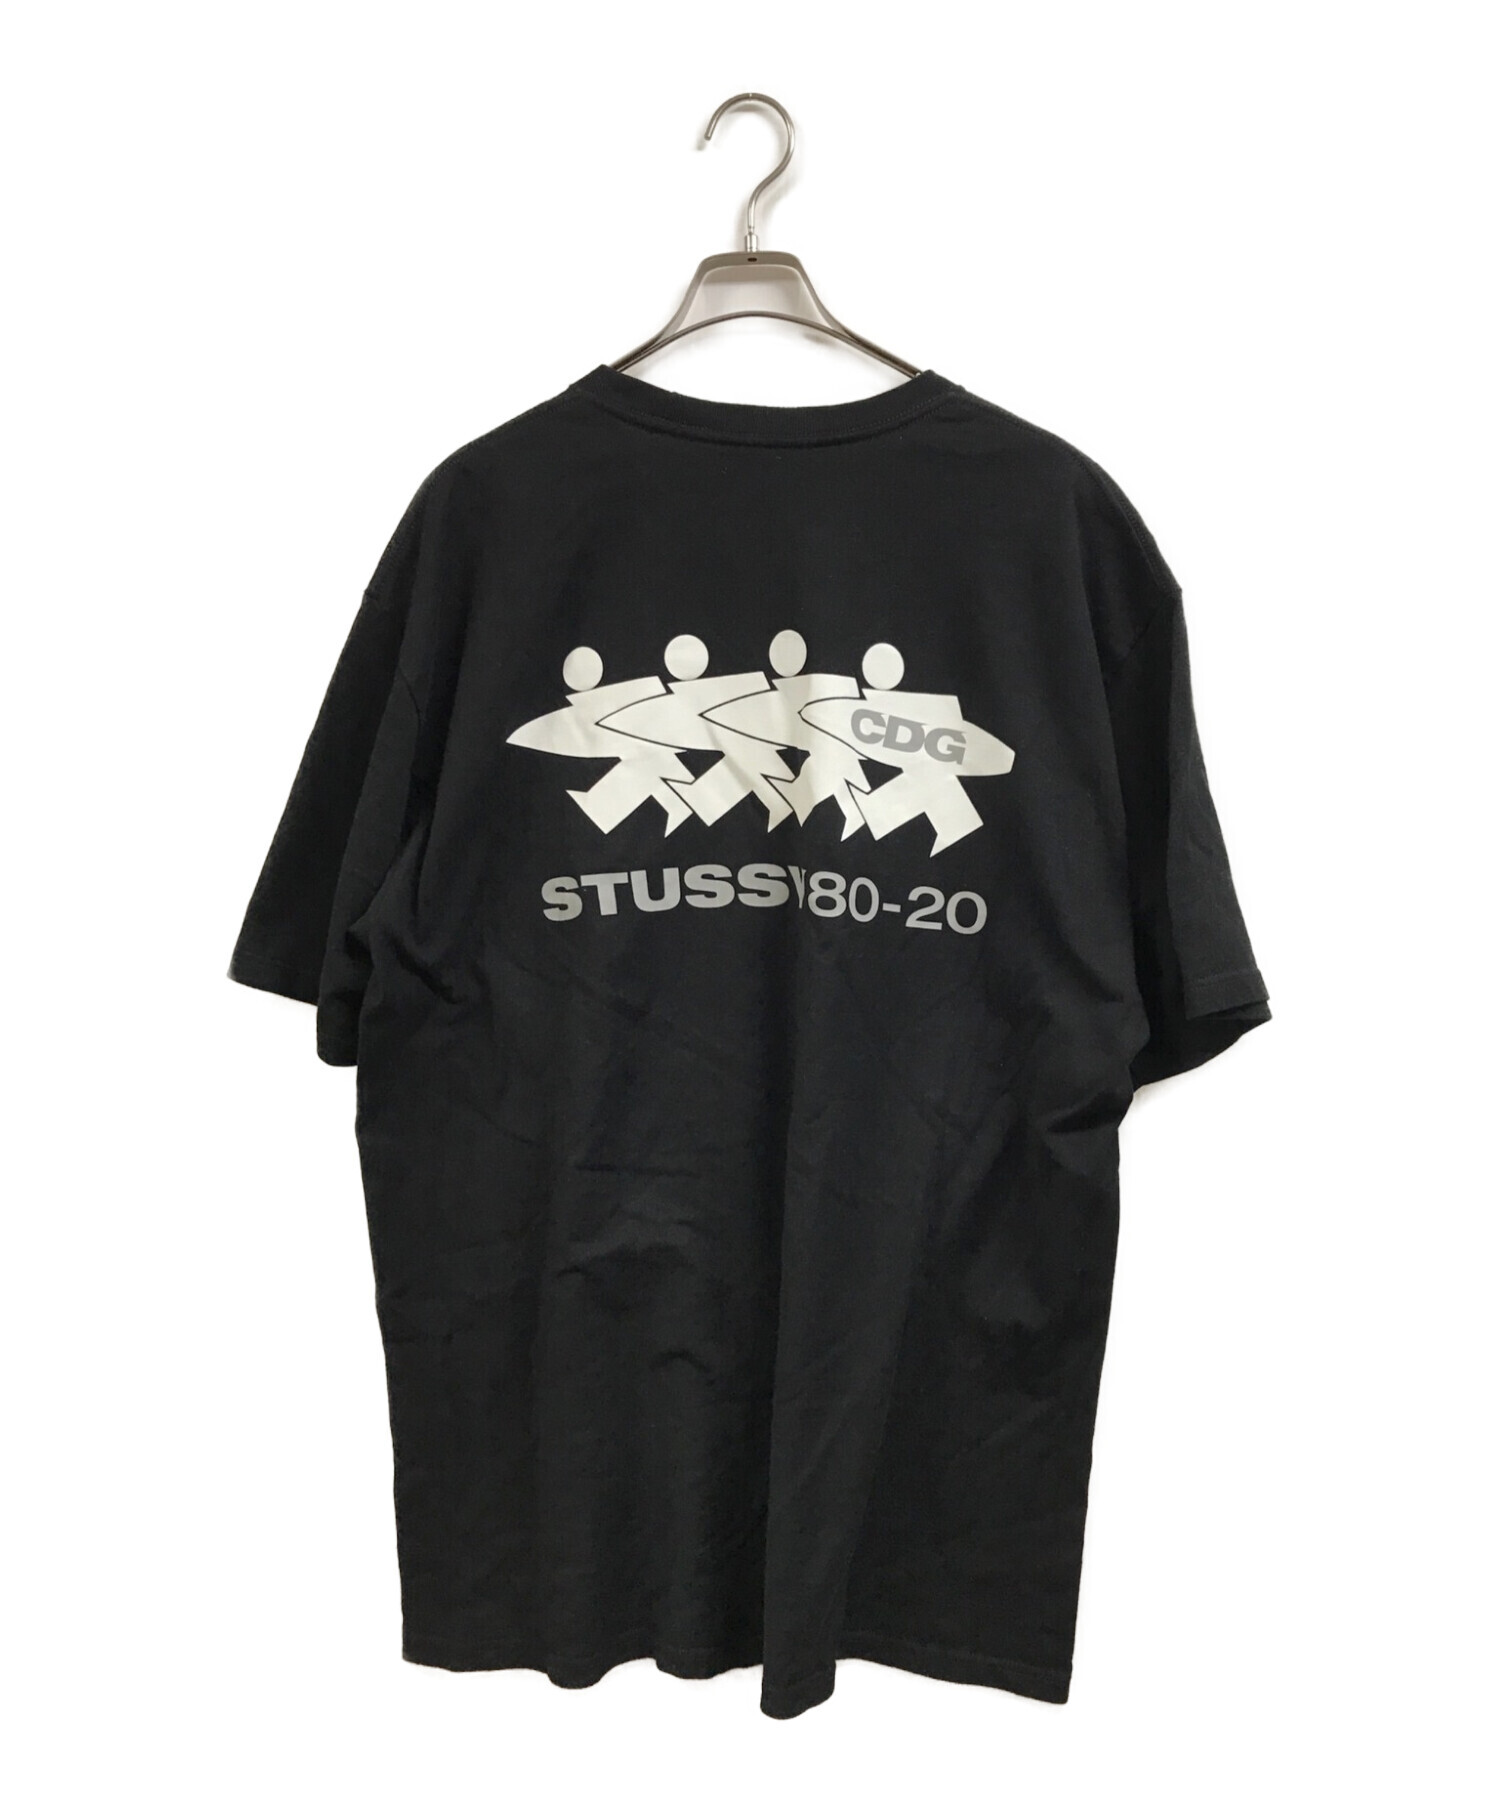 stussy (ステューシー) CDG (シーディージー コムデギャルソン) 40周年記念Tシャツ ブラック サイズ:XL